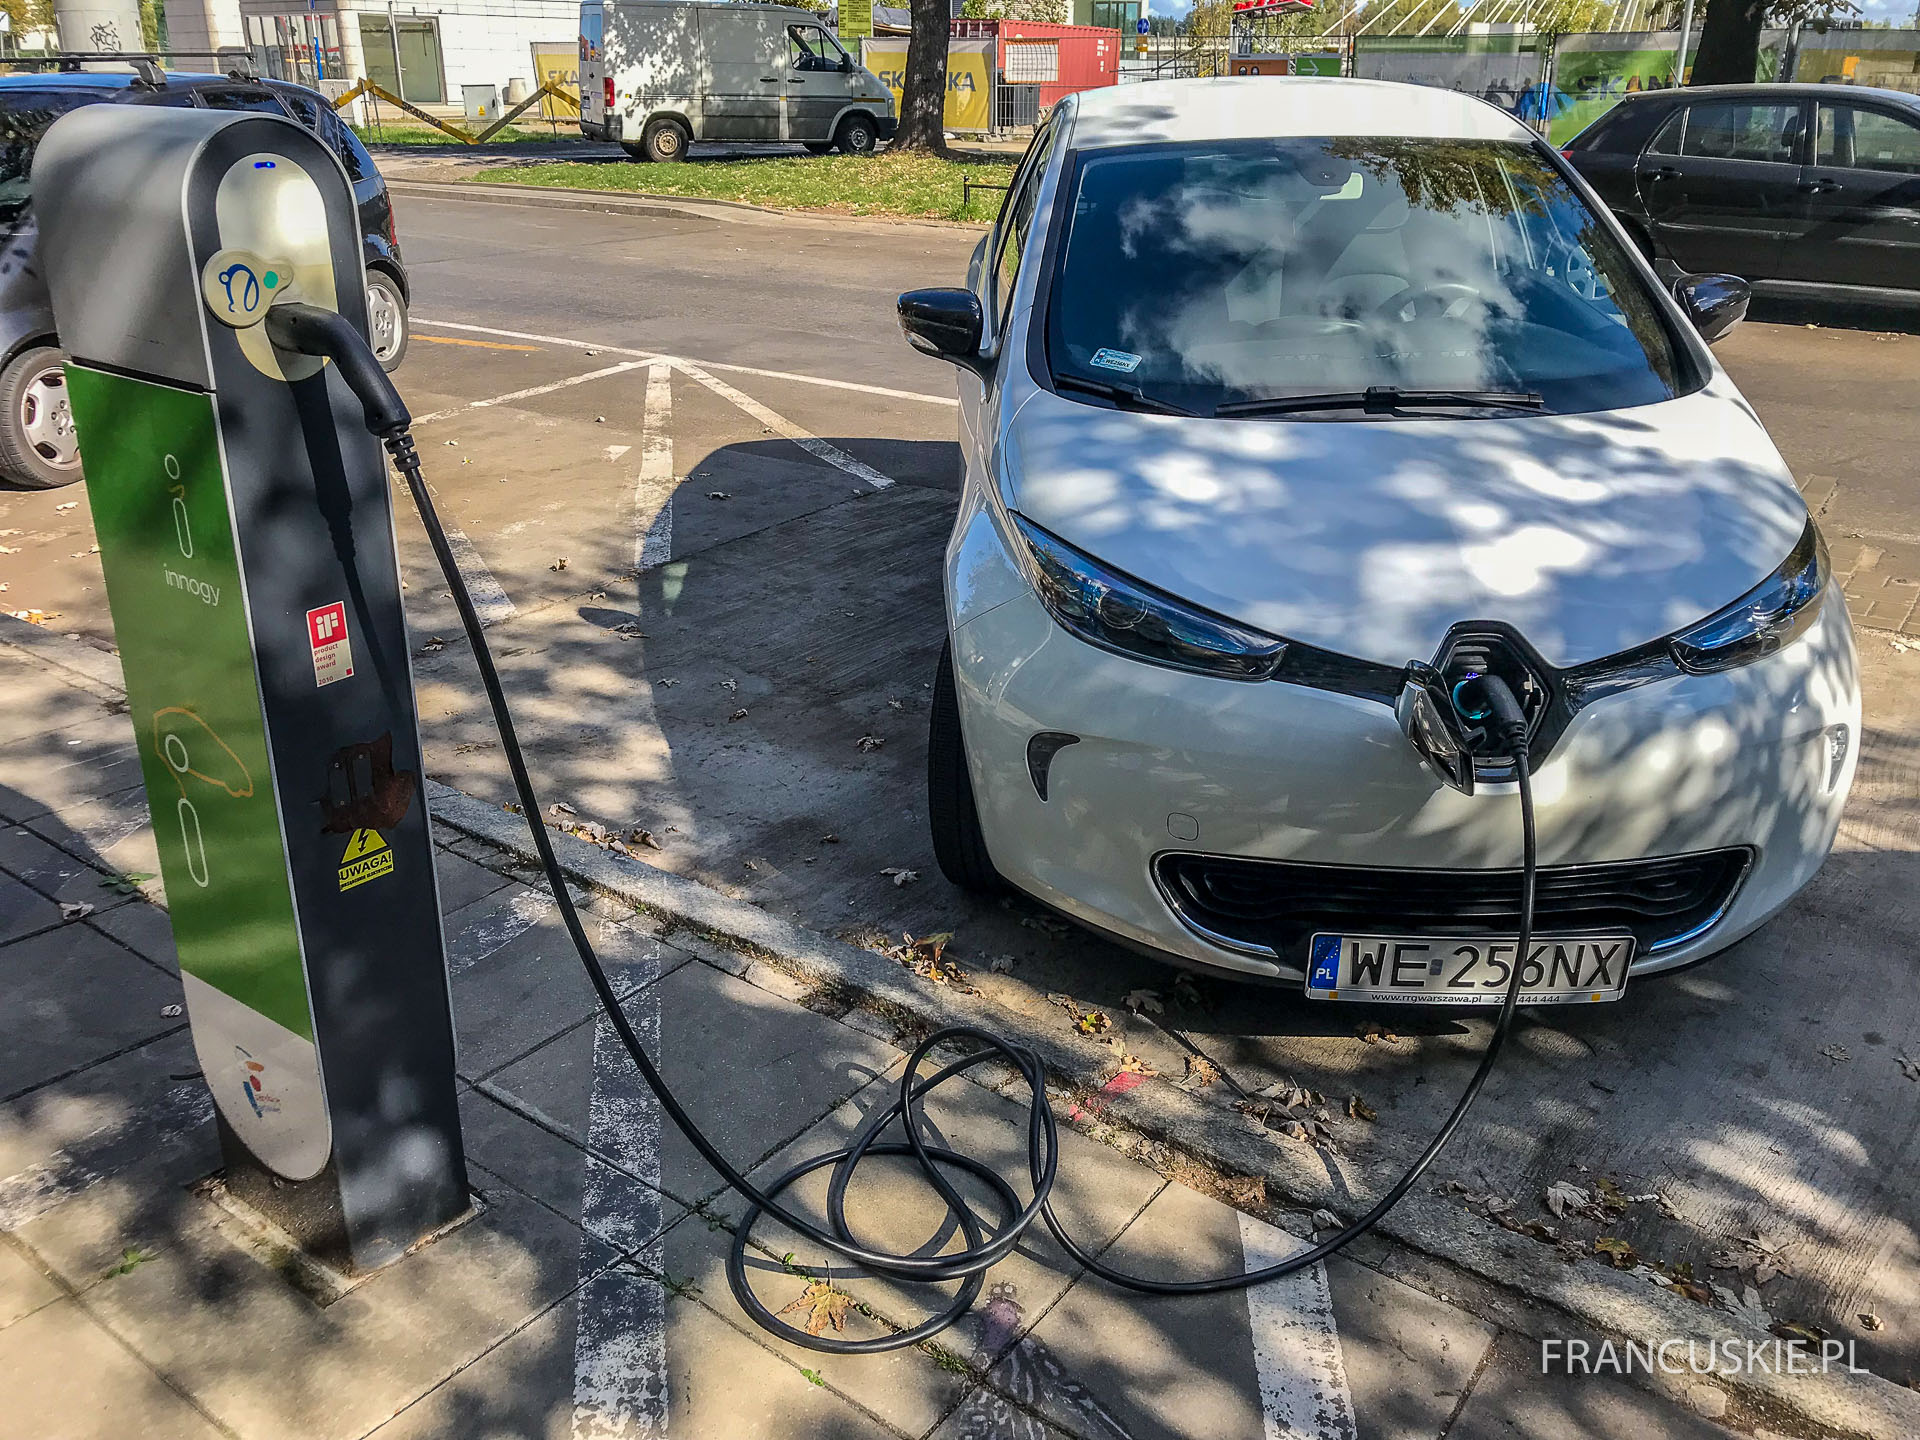 Ile kosztuje używany samochód elektryczny? Francuskie.pl